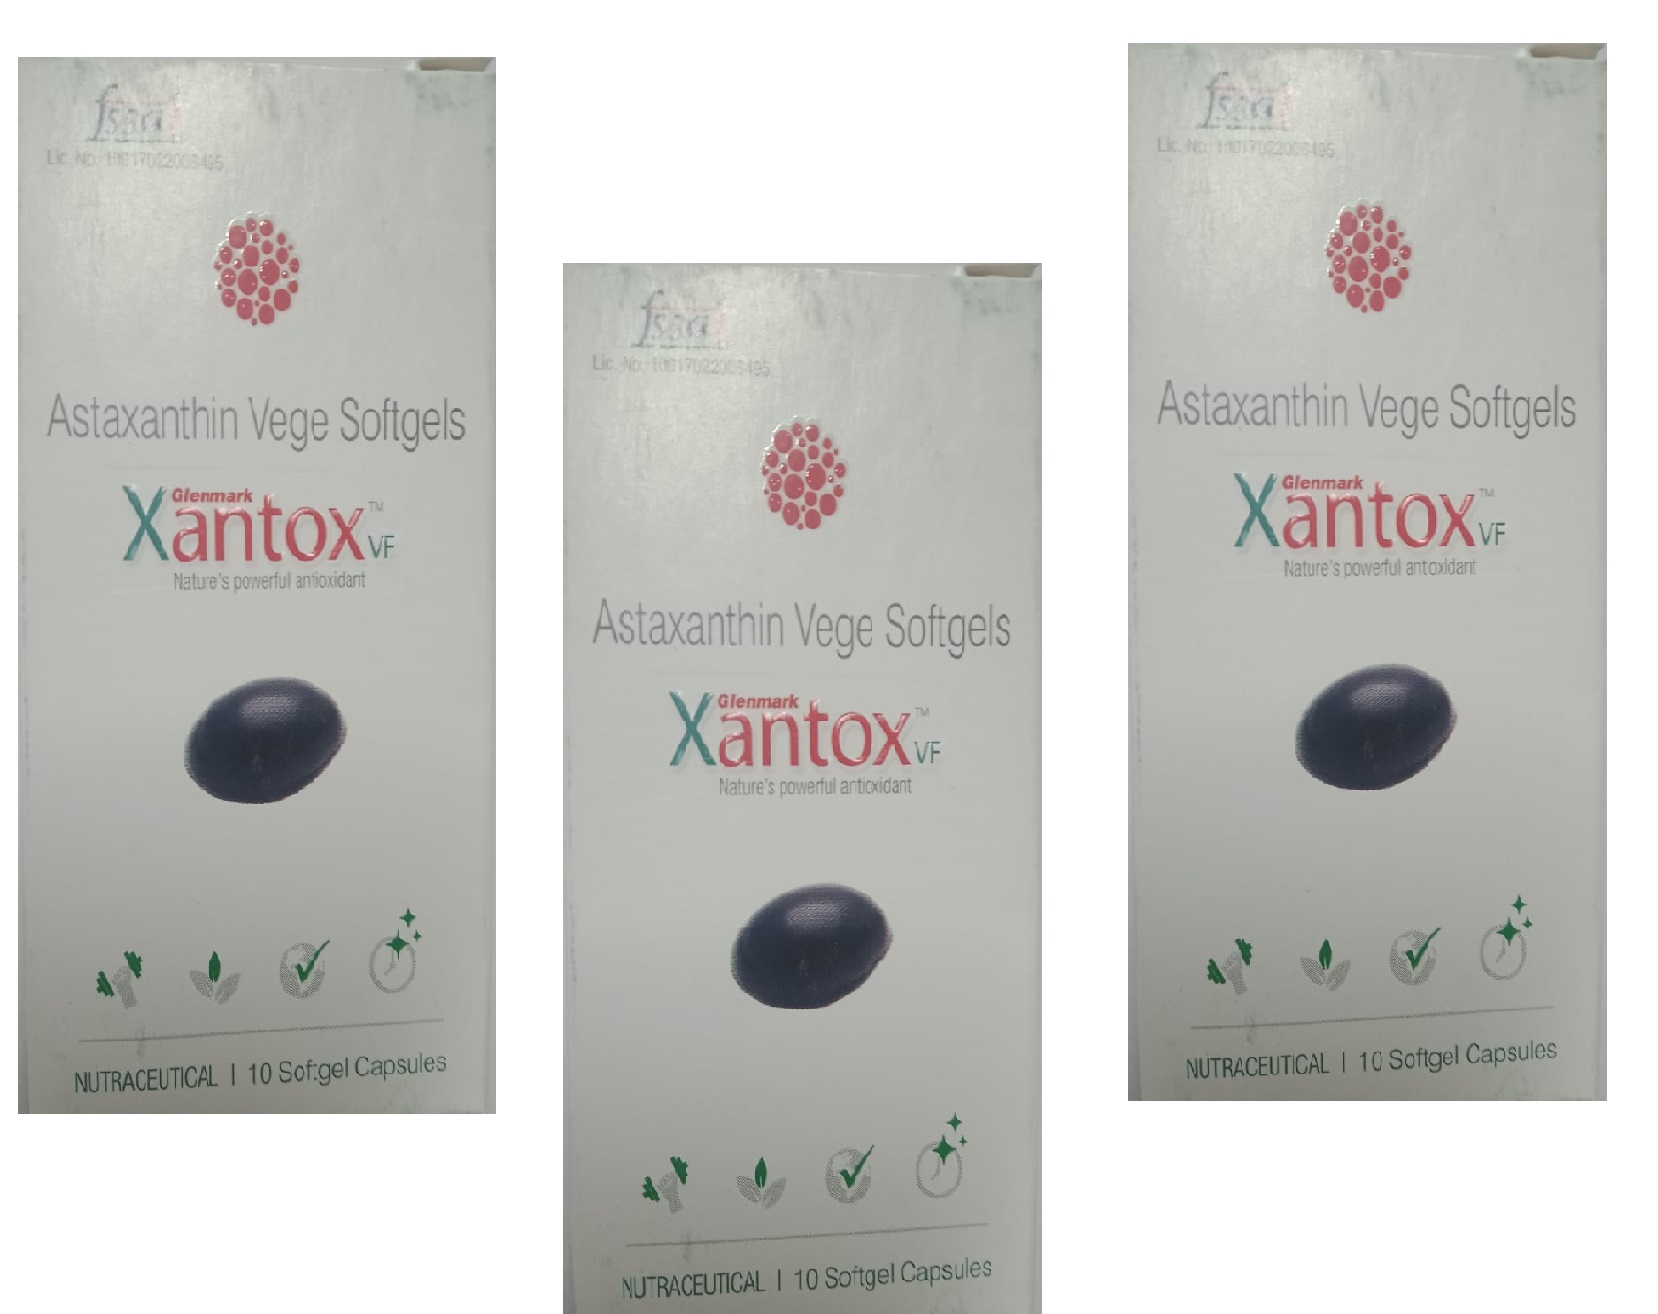 Xantox VF Sunscreen Antioxident Supplement for Skin -30 Capsules